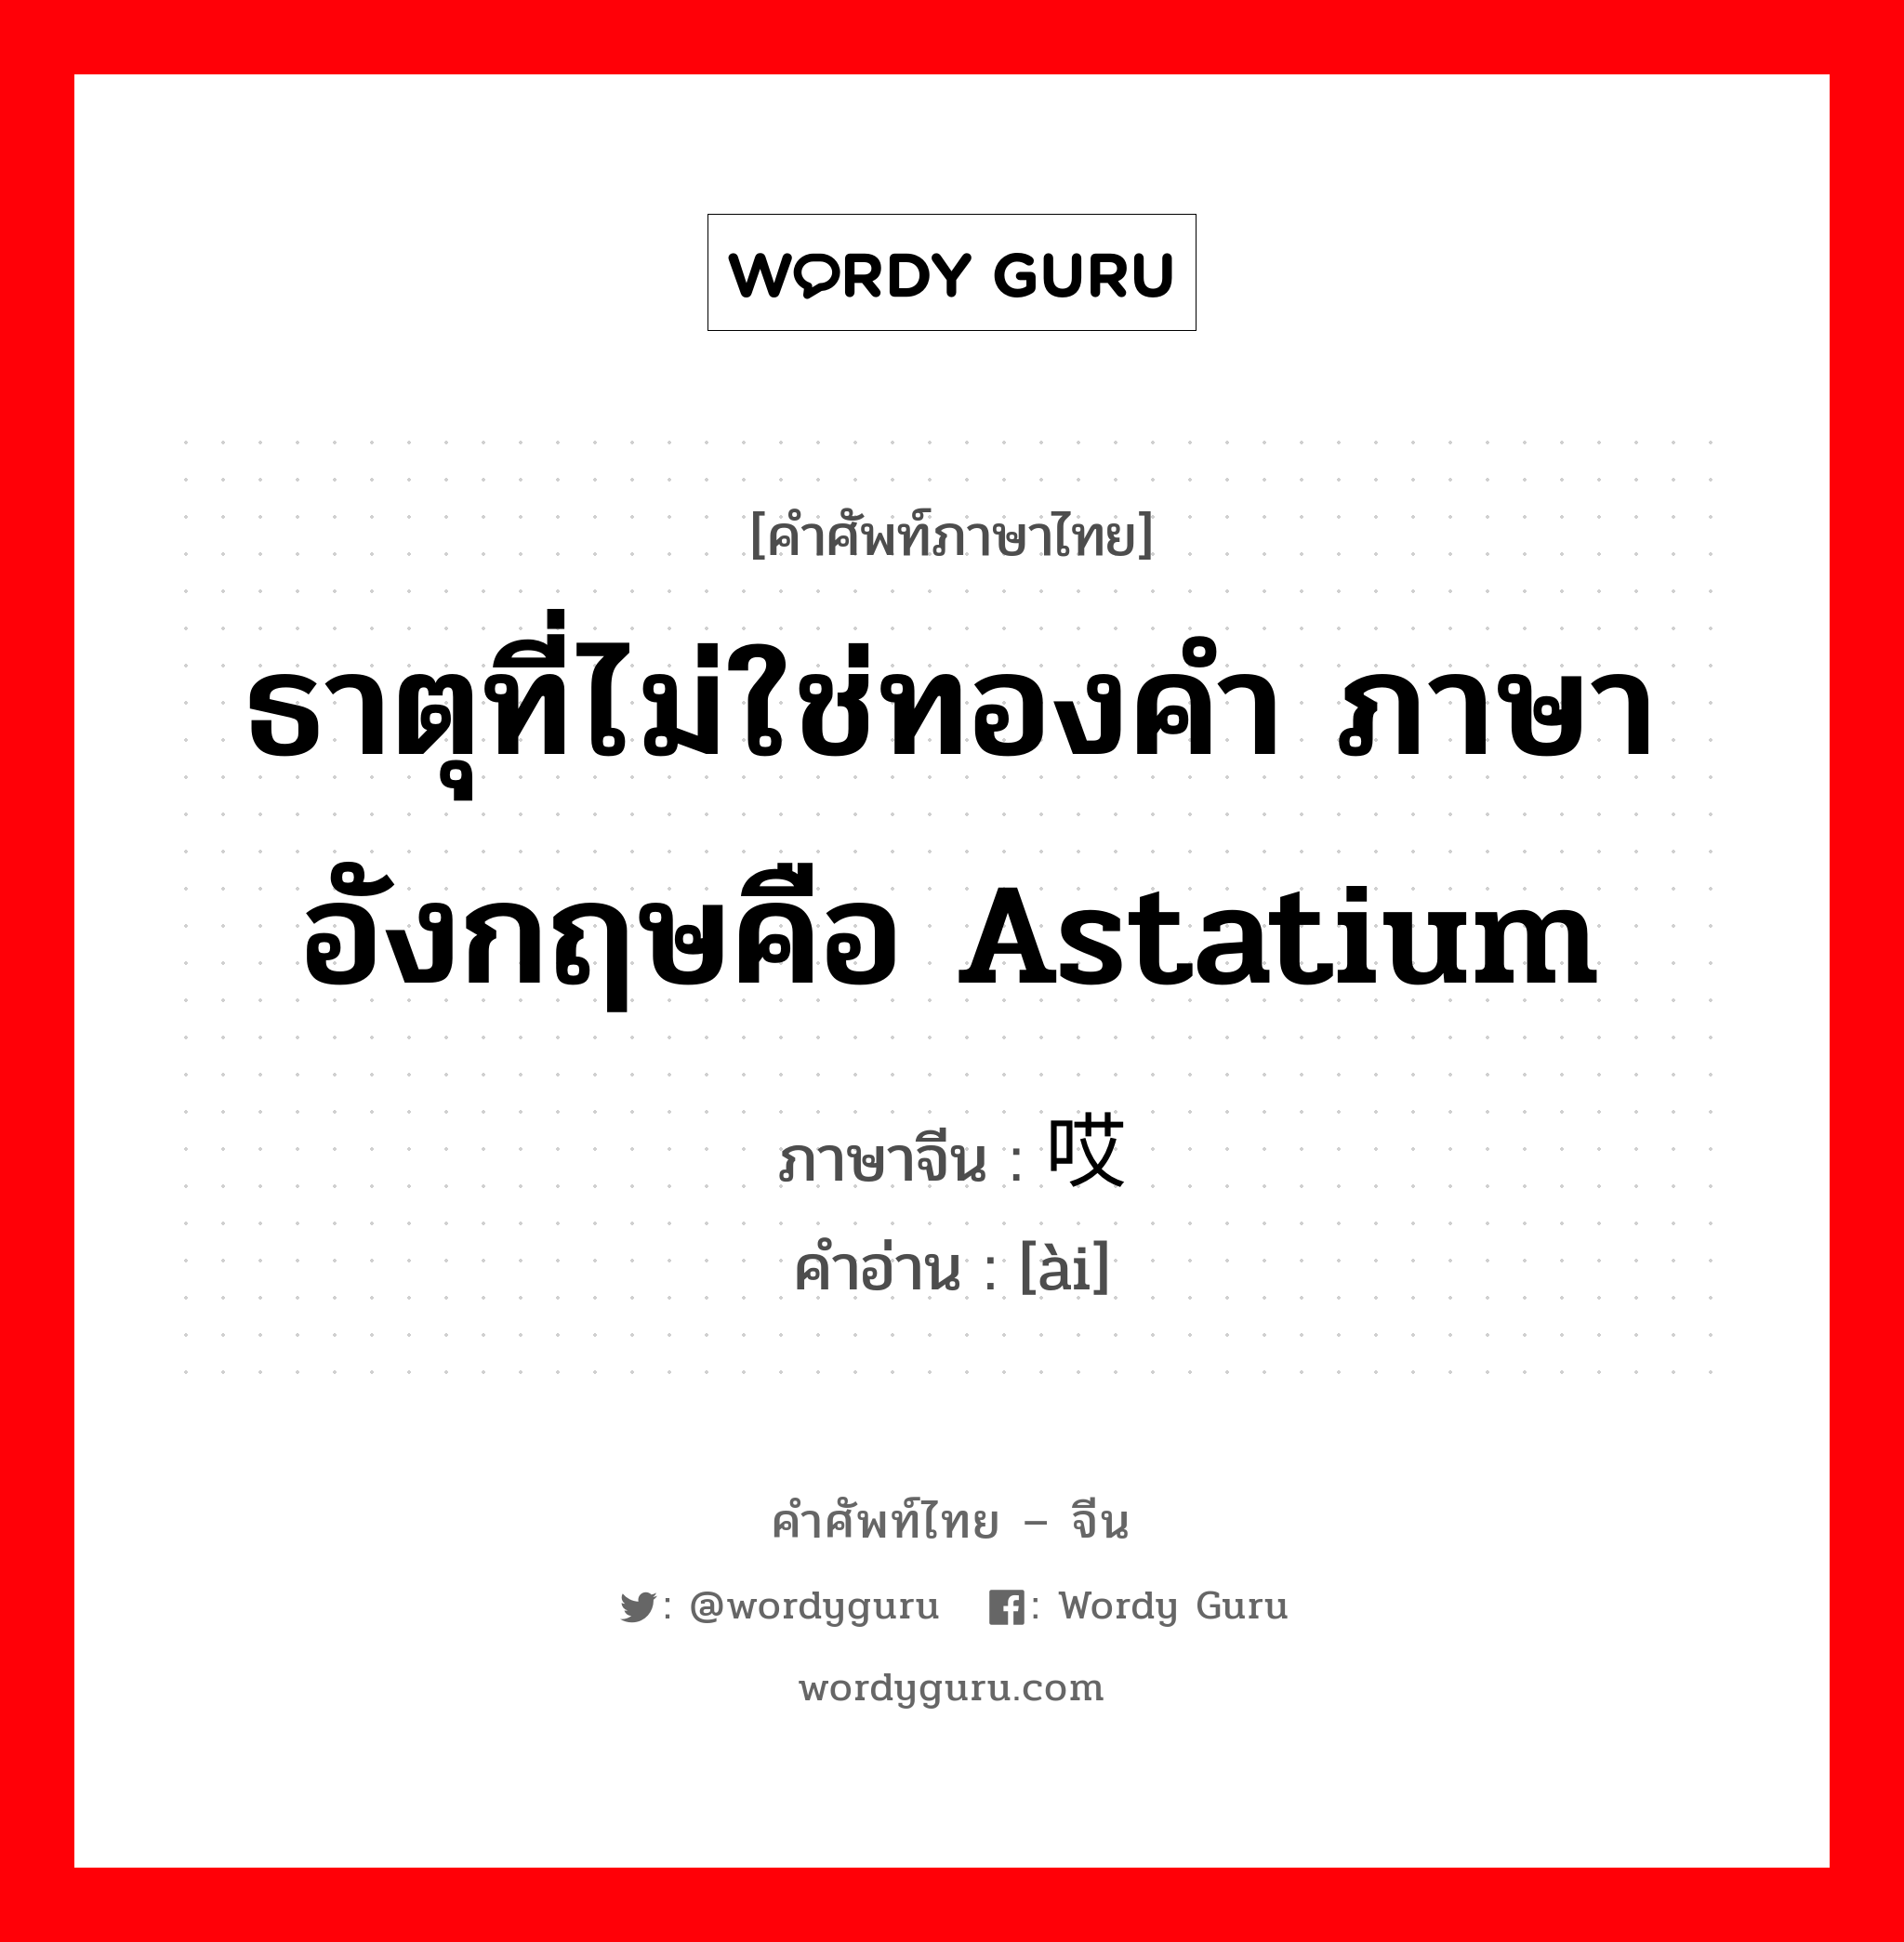 ธาตุที่ไม่ใช่ทองคำ ภาษาอังกฤษคือ astatium ภาษาจีนคืออะไร, คำศัพท์ภาษาไทย - จีน ธาตุที่ไม่ใช่ทองคำ ภาษาอังกฤษคือ astatium ภาษาจีน 哎 คำอ่าน [ài]